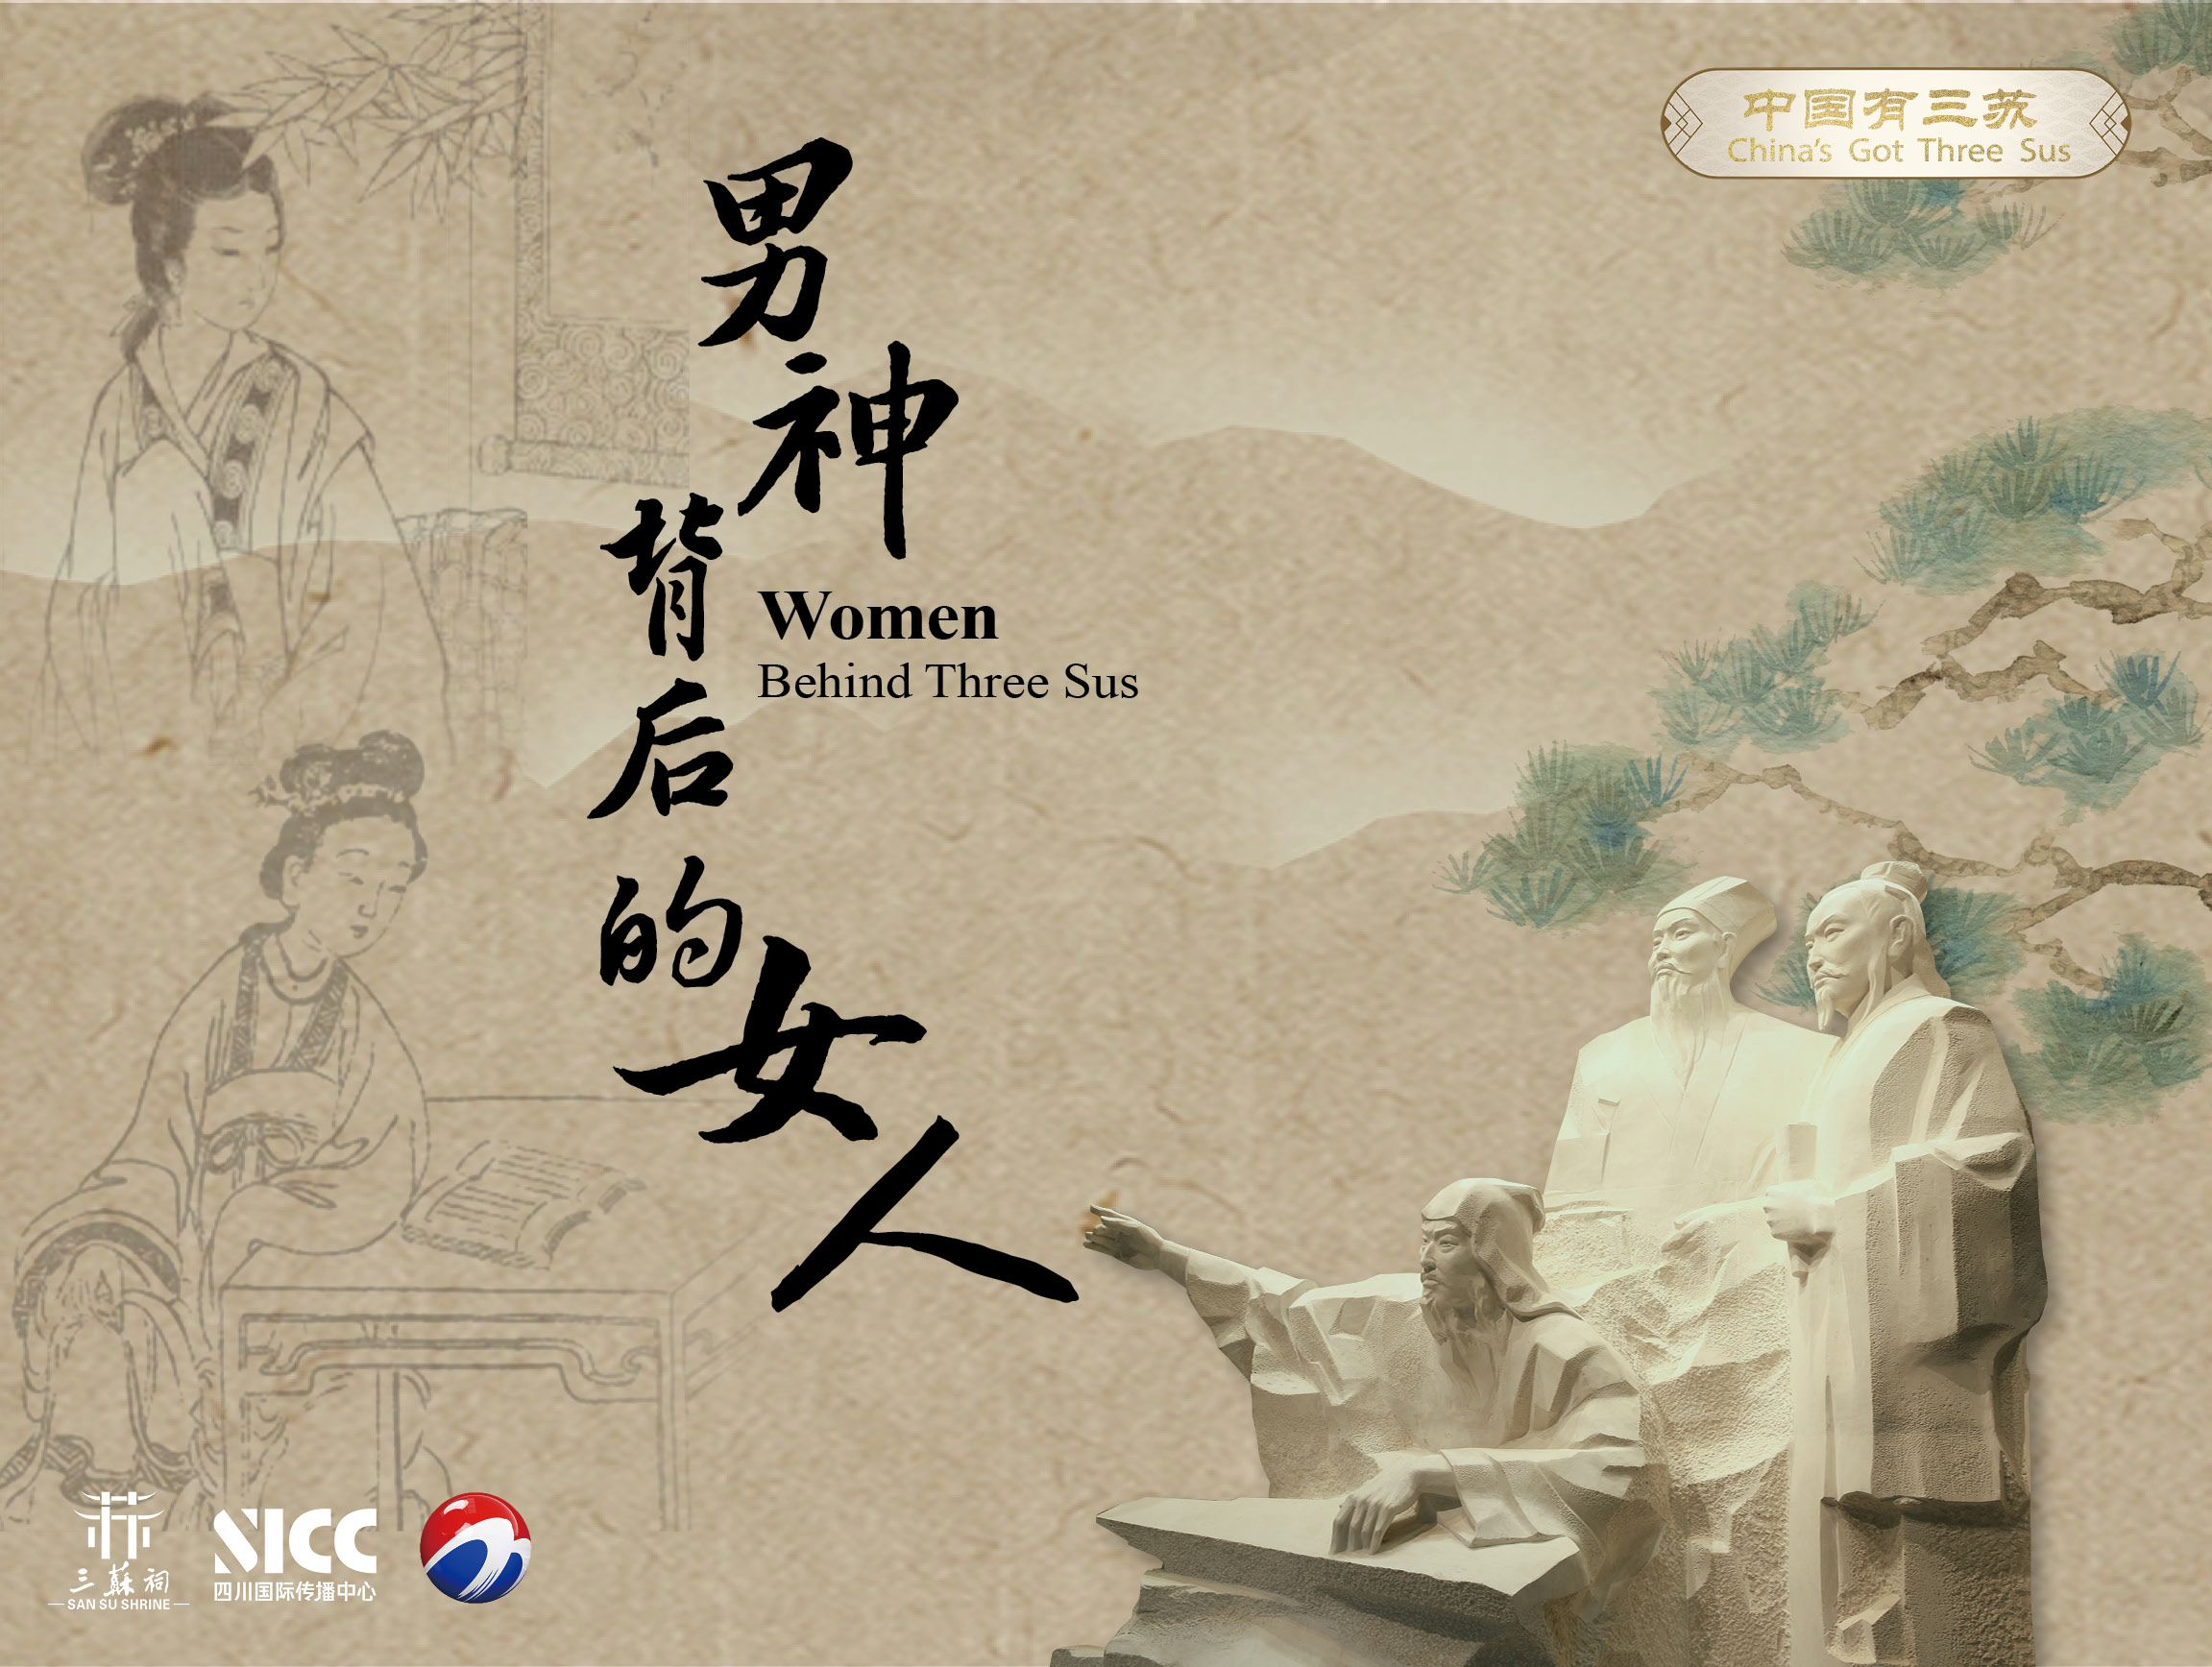 《中國有三蘇China`s Got Three Sus》第六集“男神背後的女人”